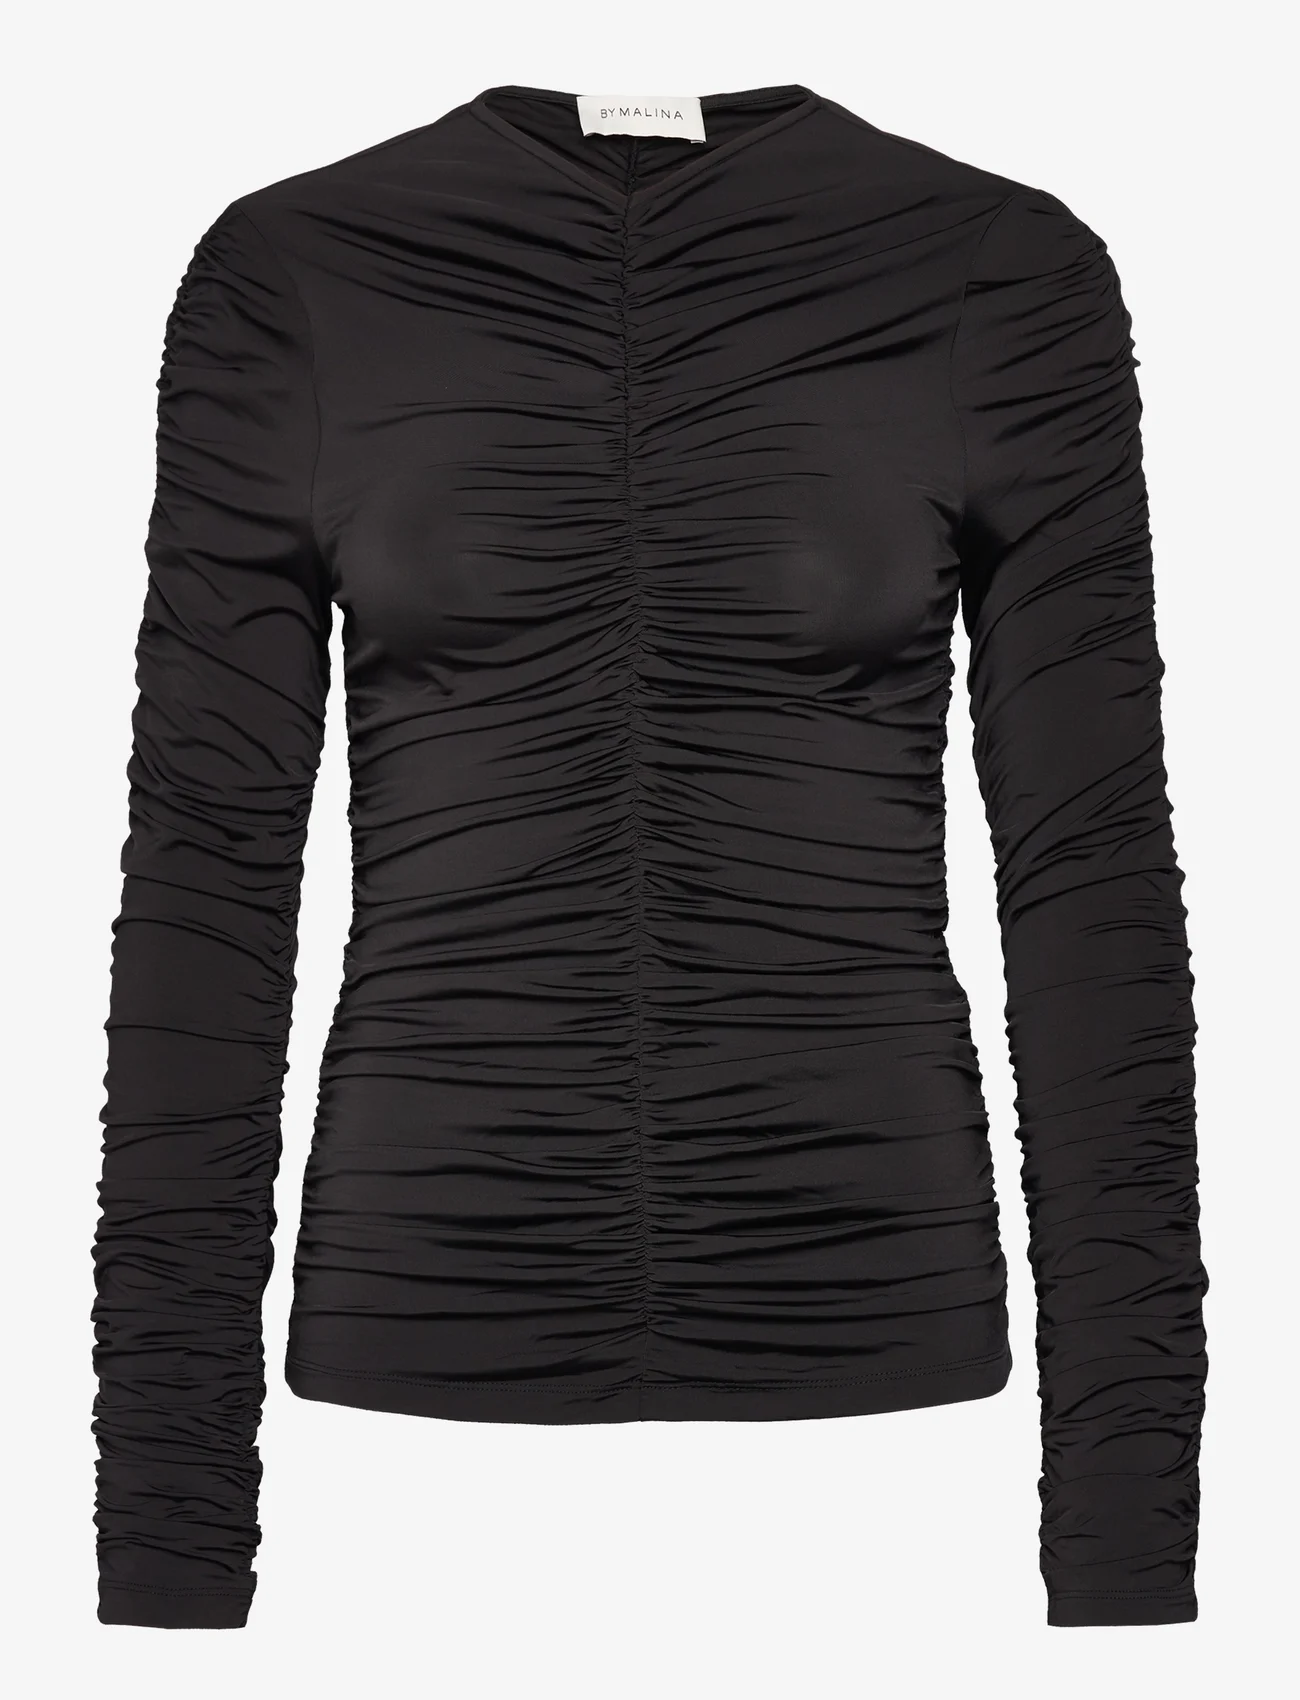 Malina - Lydia long sleeve draped jersey top - pitkähihaiset t-paidat - black - 0